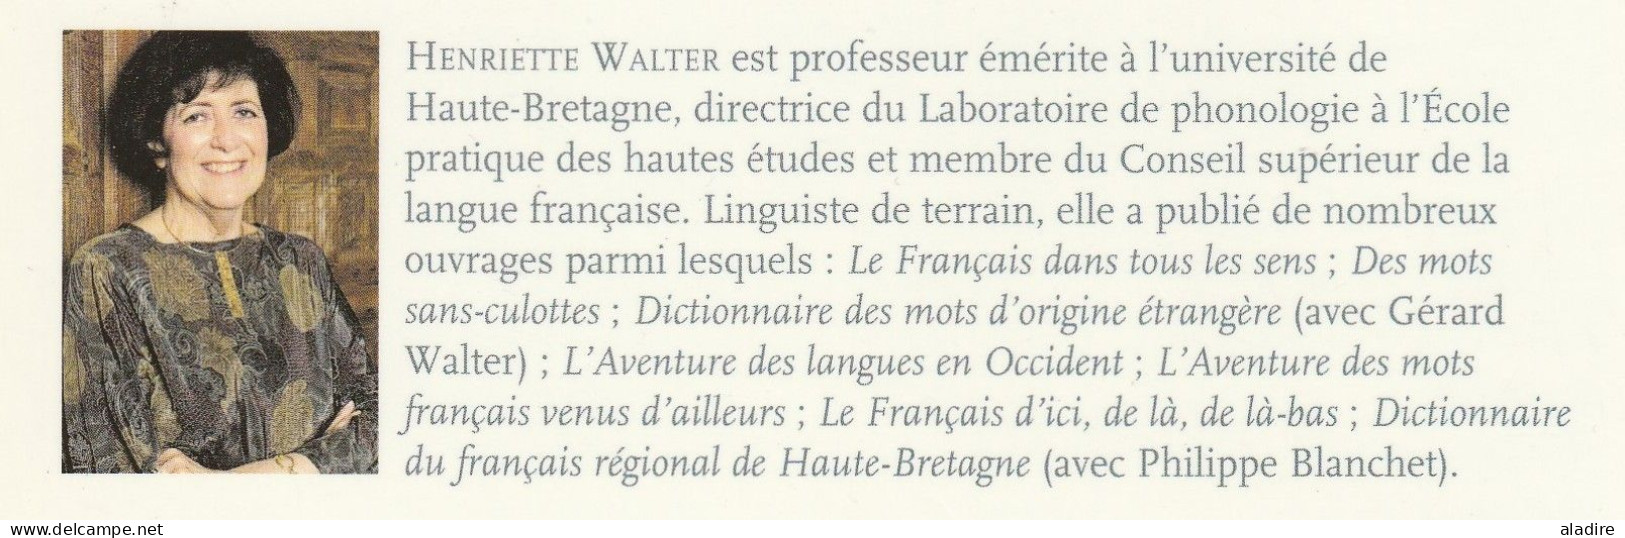 HENRIETTE WALTER - HONNI SOIT QUI MAL Y PENSE - Robert Laffont - Broché - 2001 - 363 Pages - Encyclopédies